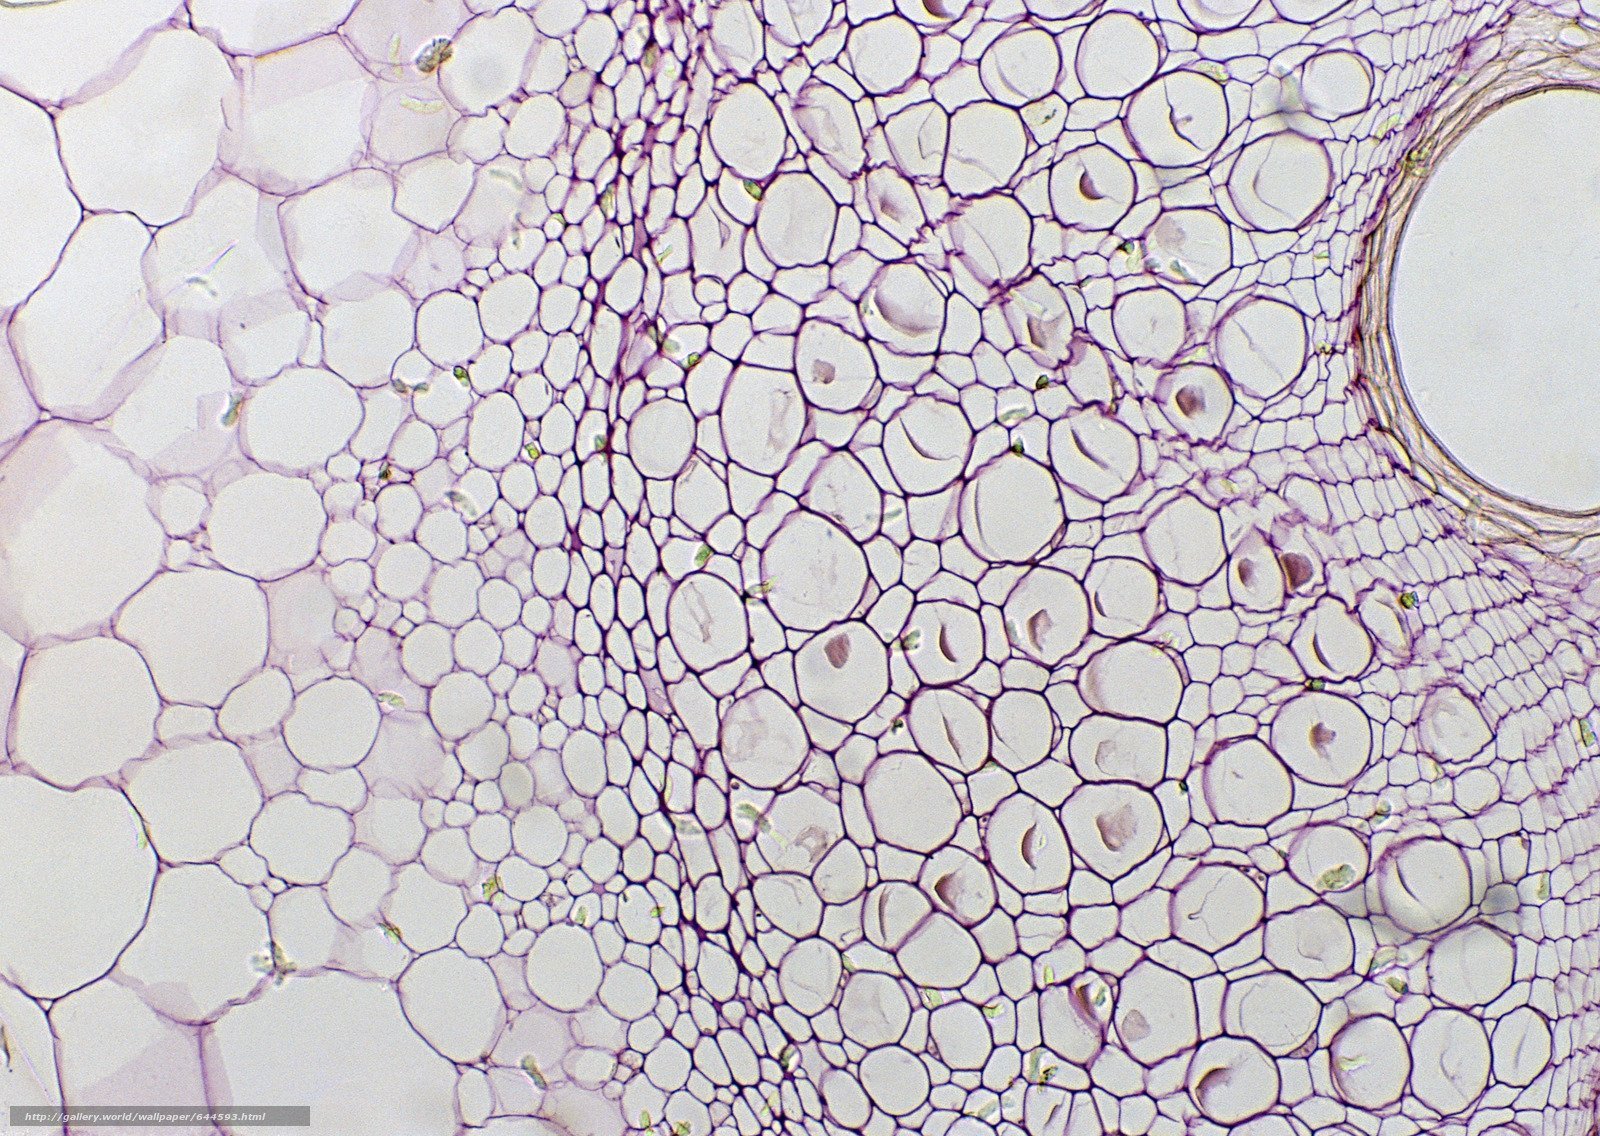 Клетка в микроскопе